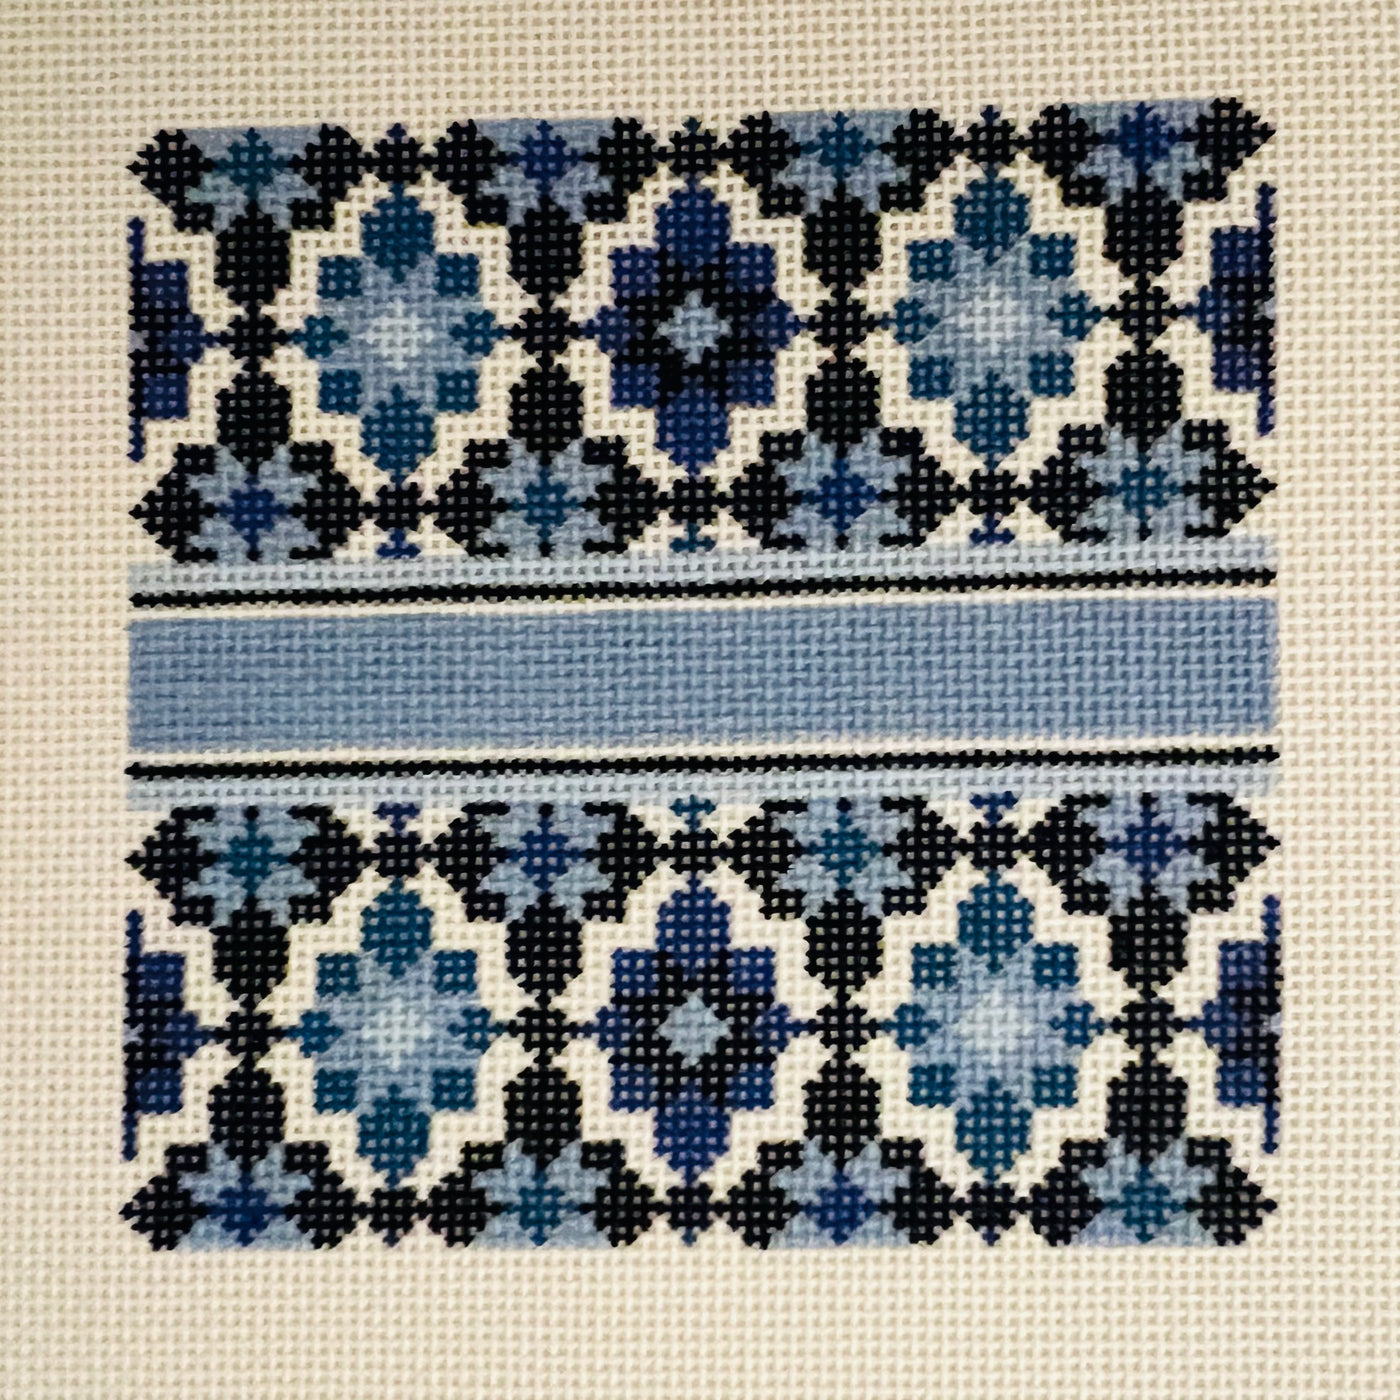 Portuguese Tiles 4" Square - Blue Needlepoint Canvas